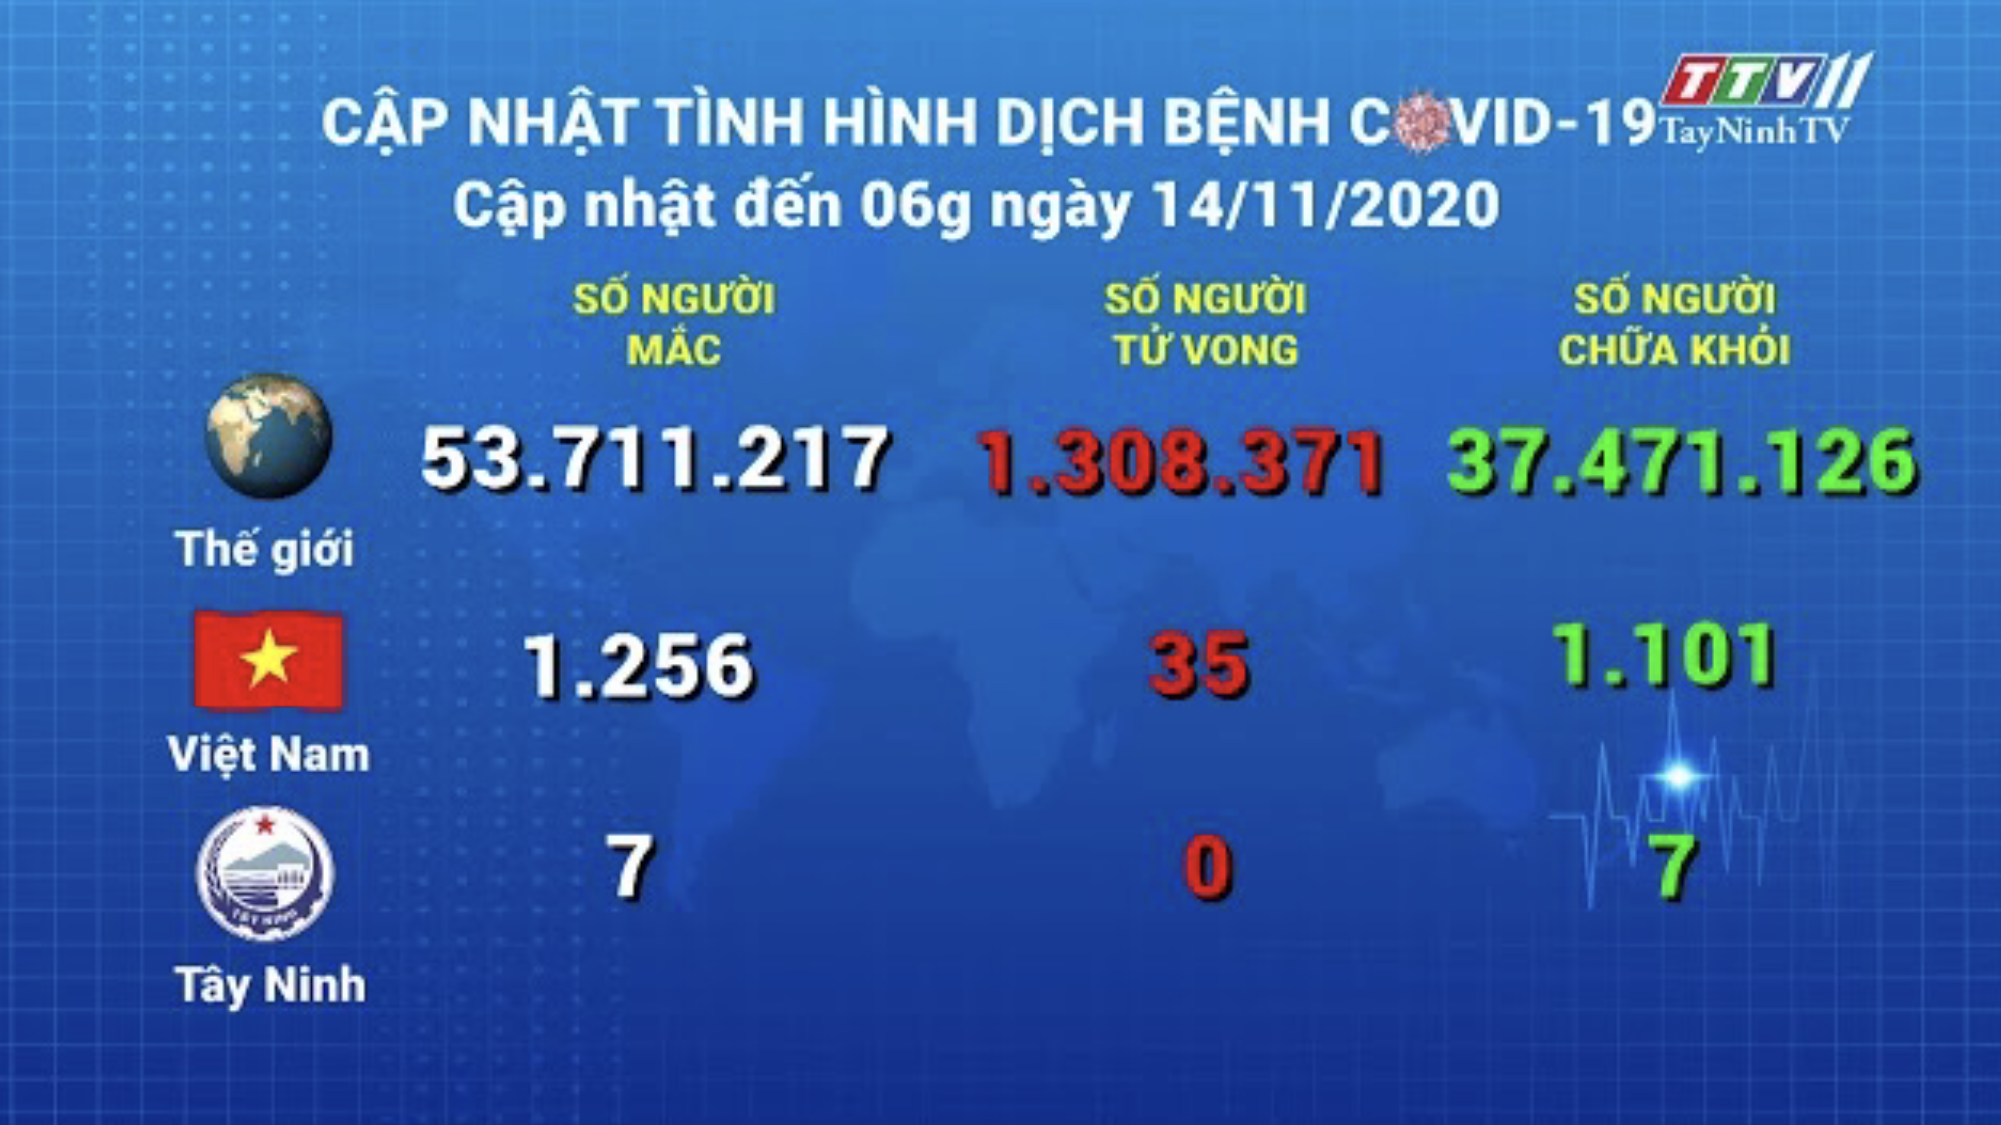 Cập nhật tình hình Covid-19 vào lúc 06 giờ 14-11-2020 | Thông tin dịch Covid-19 | TayNinhTV